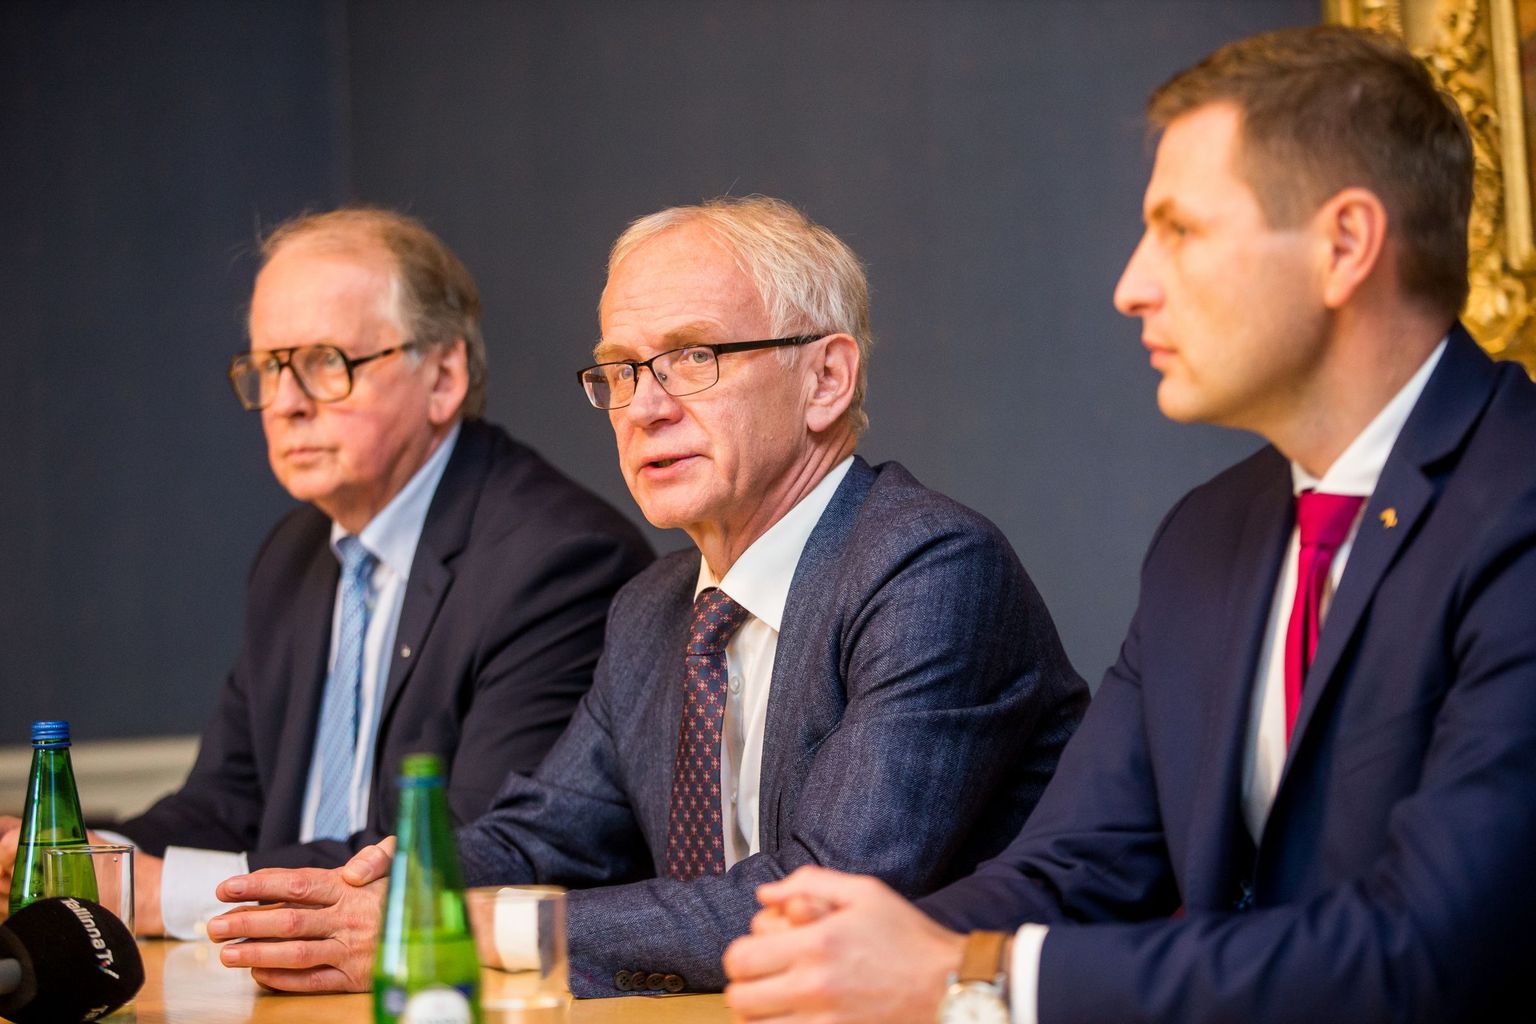 Riigikogu juhatus:(vasakult) Enn Eesmaa, Eiki Nestor, Hanno Pevkur.
FOTO: EERO VABAMÄGI/POSTIMEES